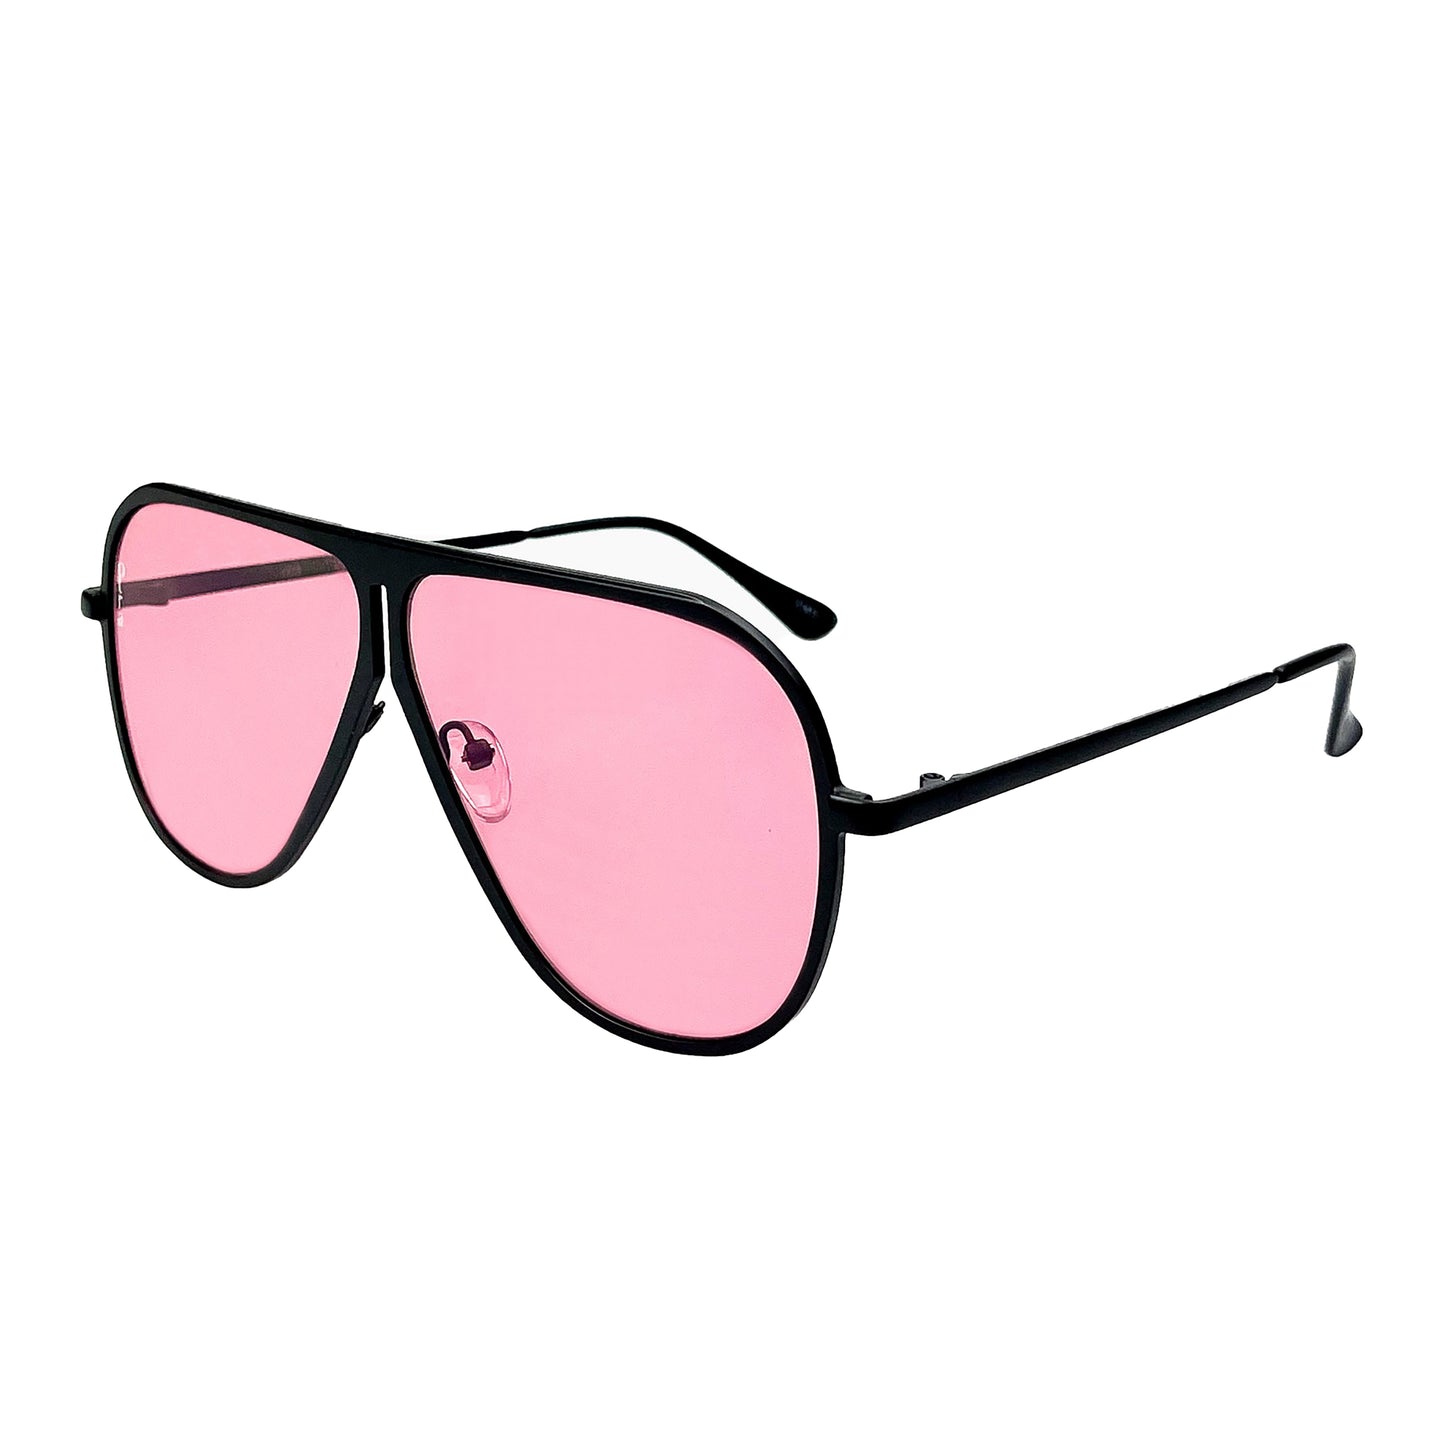 Otra Eyewear Ava Small Sunglasses